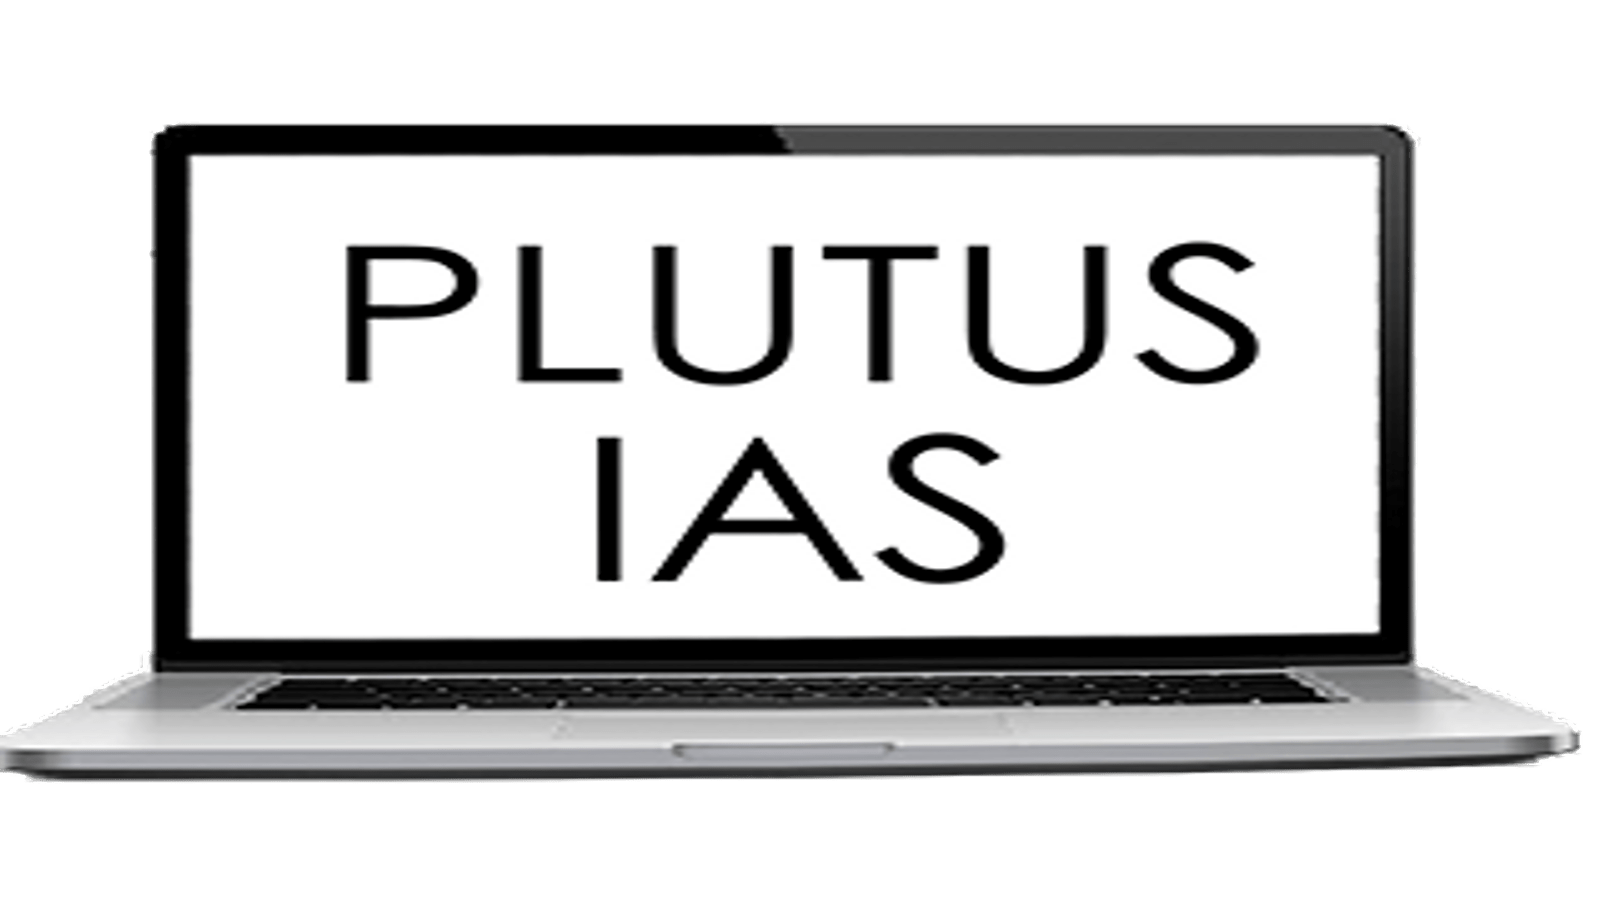 Plutus IAS Online Coaching Kanpur